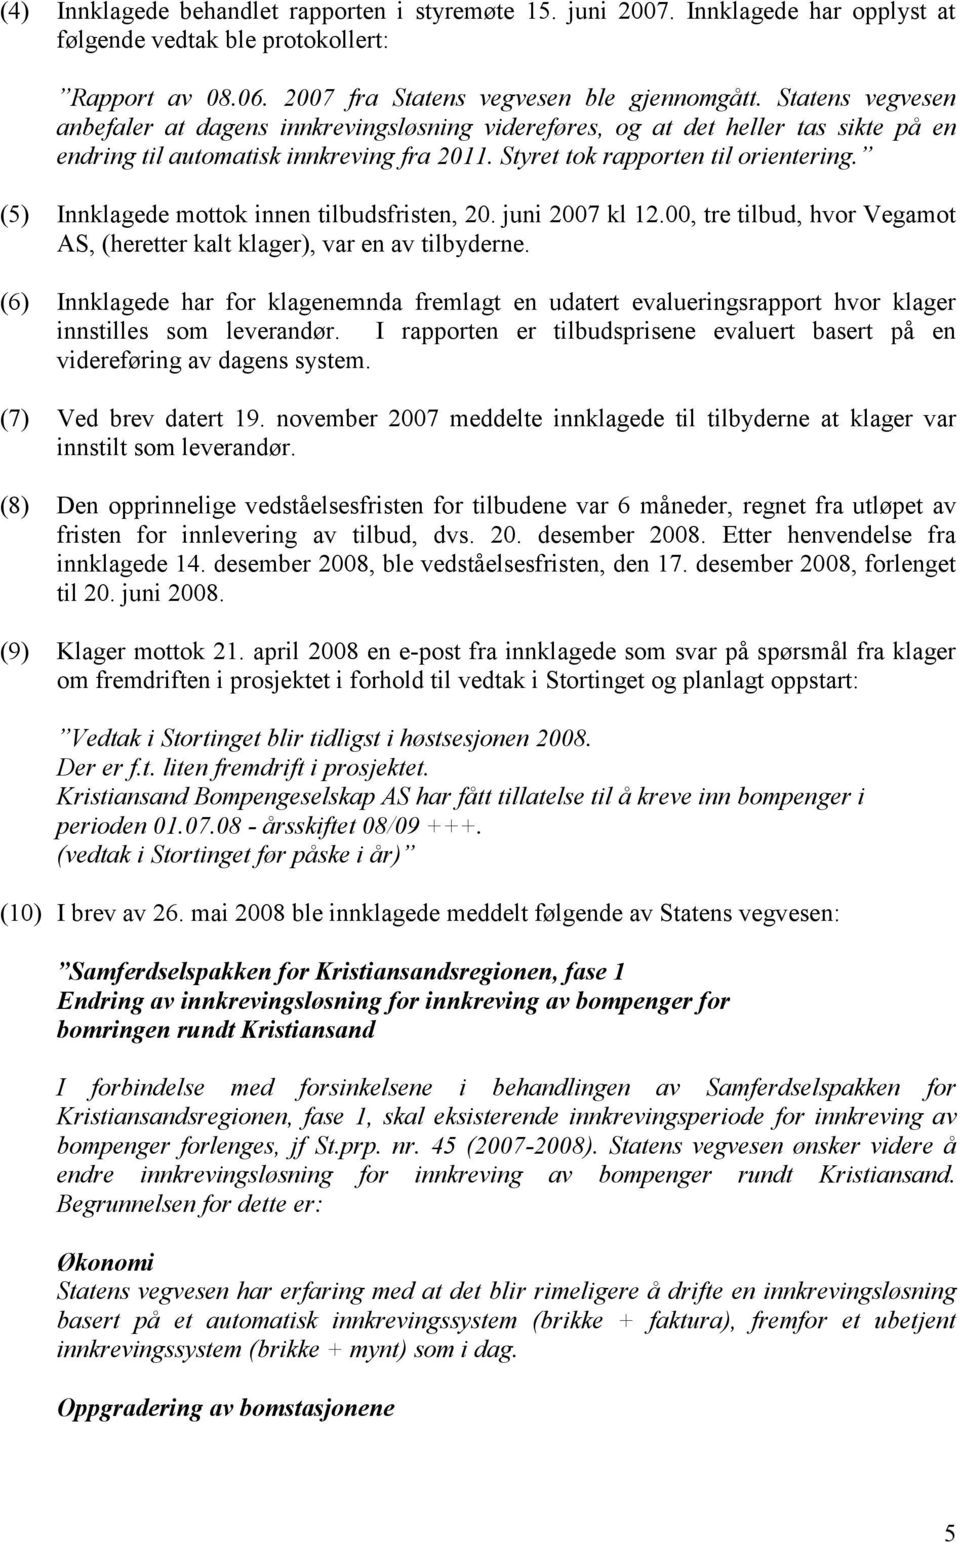 (5) Innklagede mottok innen tilbudsfristen, 20. juni 2007 kl 12.00, tre tilbud, hvor Vegamot AS, (heretter kalt klager), var en av tilbyderne.